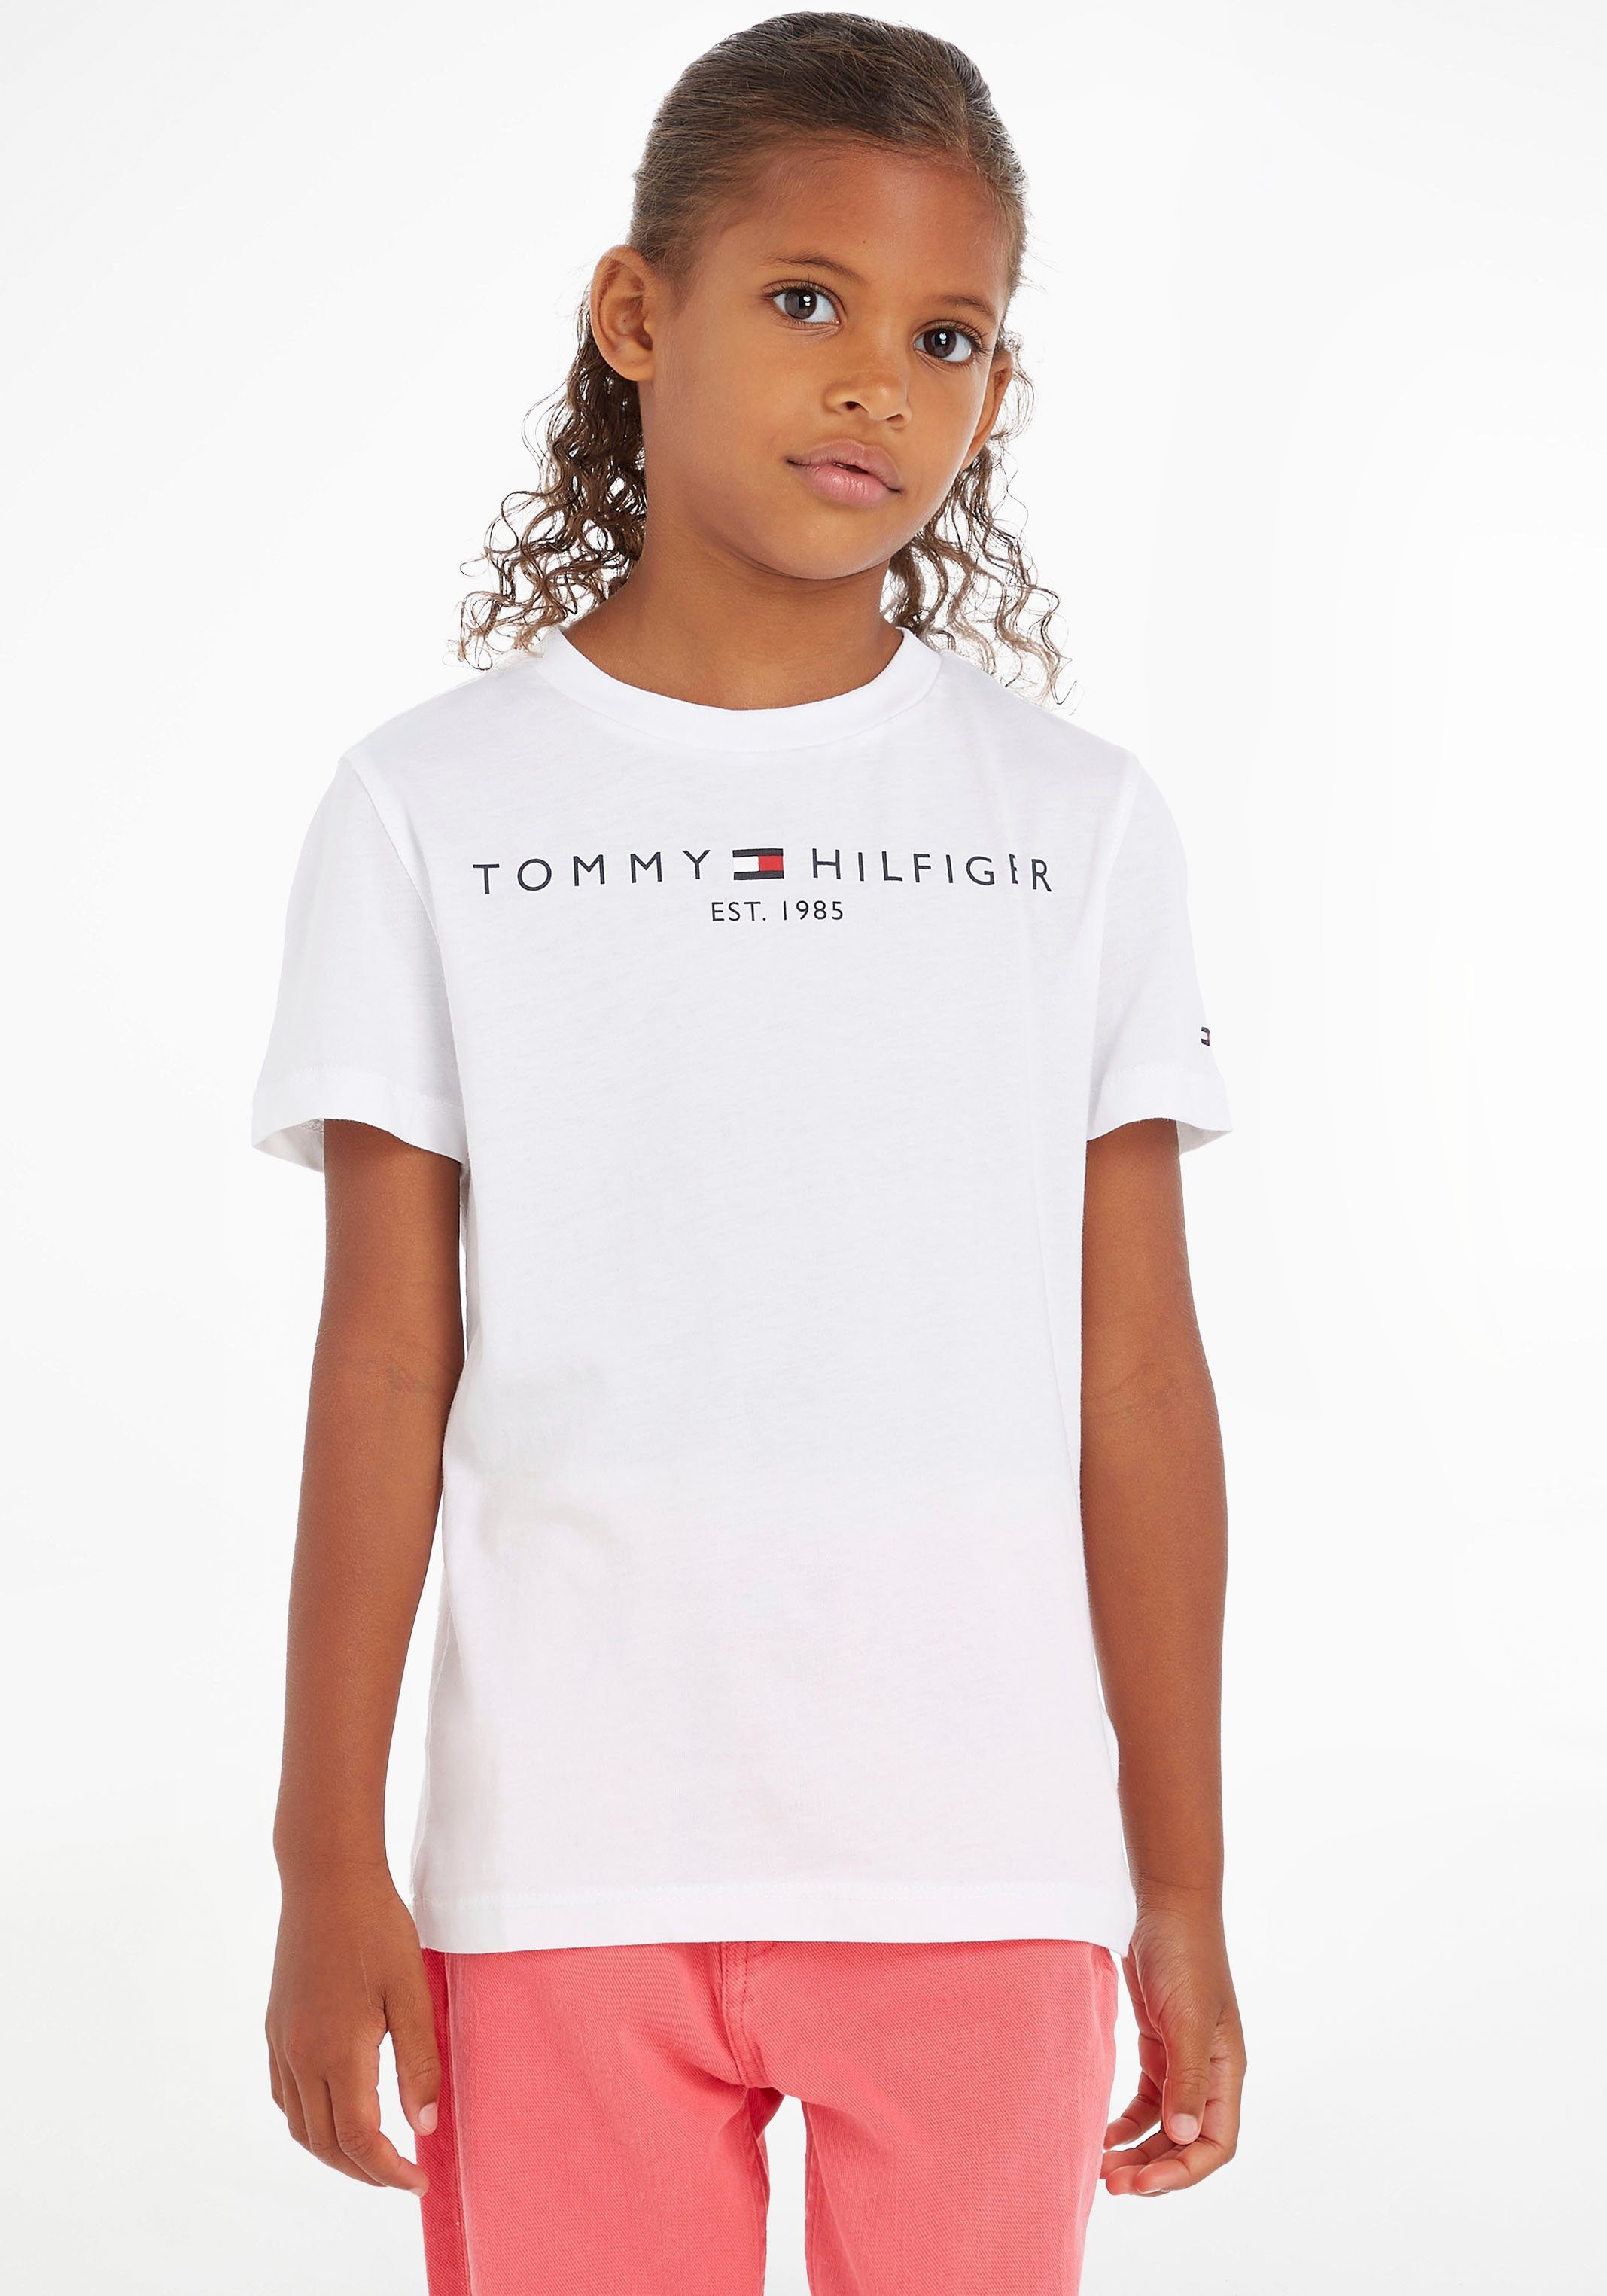 Tommy Hilfiger T-Shirt ESSENTIAL TEE Kinder Kids Junior MiniMe,für Jungen und Mädchen | T-Shirts